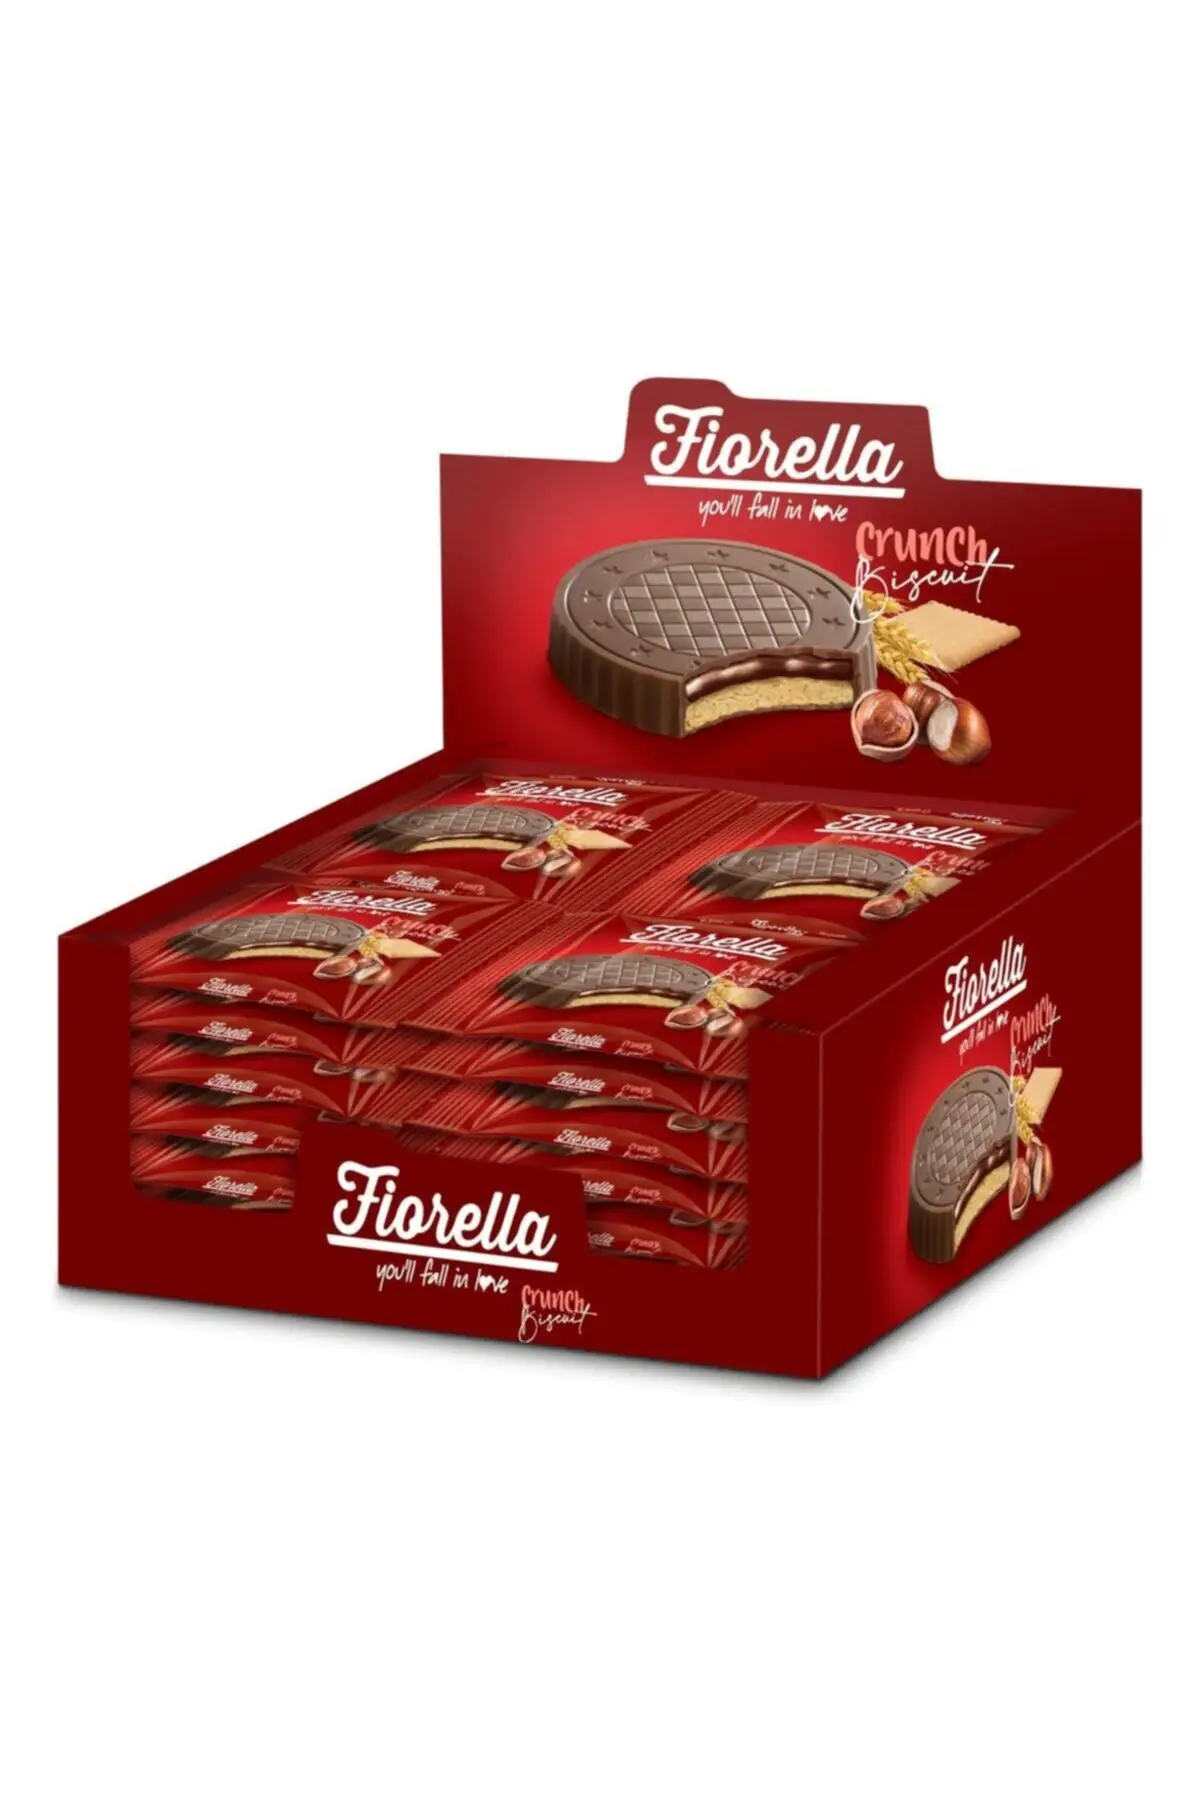 FIORELLA фундук крем шоколад печенье 22,5 г. 24 шт. (1 коробка) Бесплатная доставка от AliExpress WW